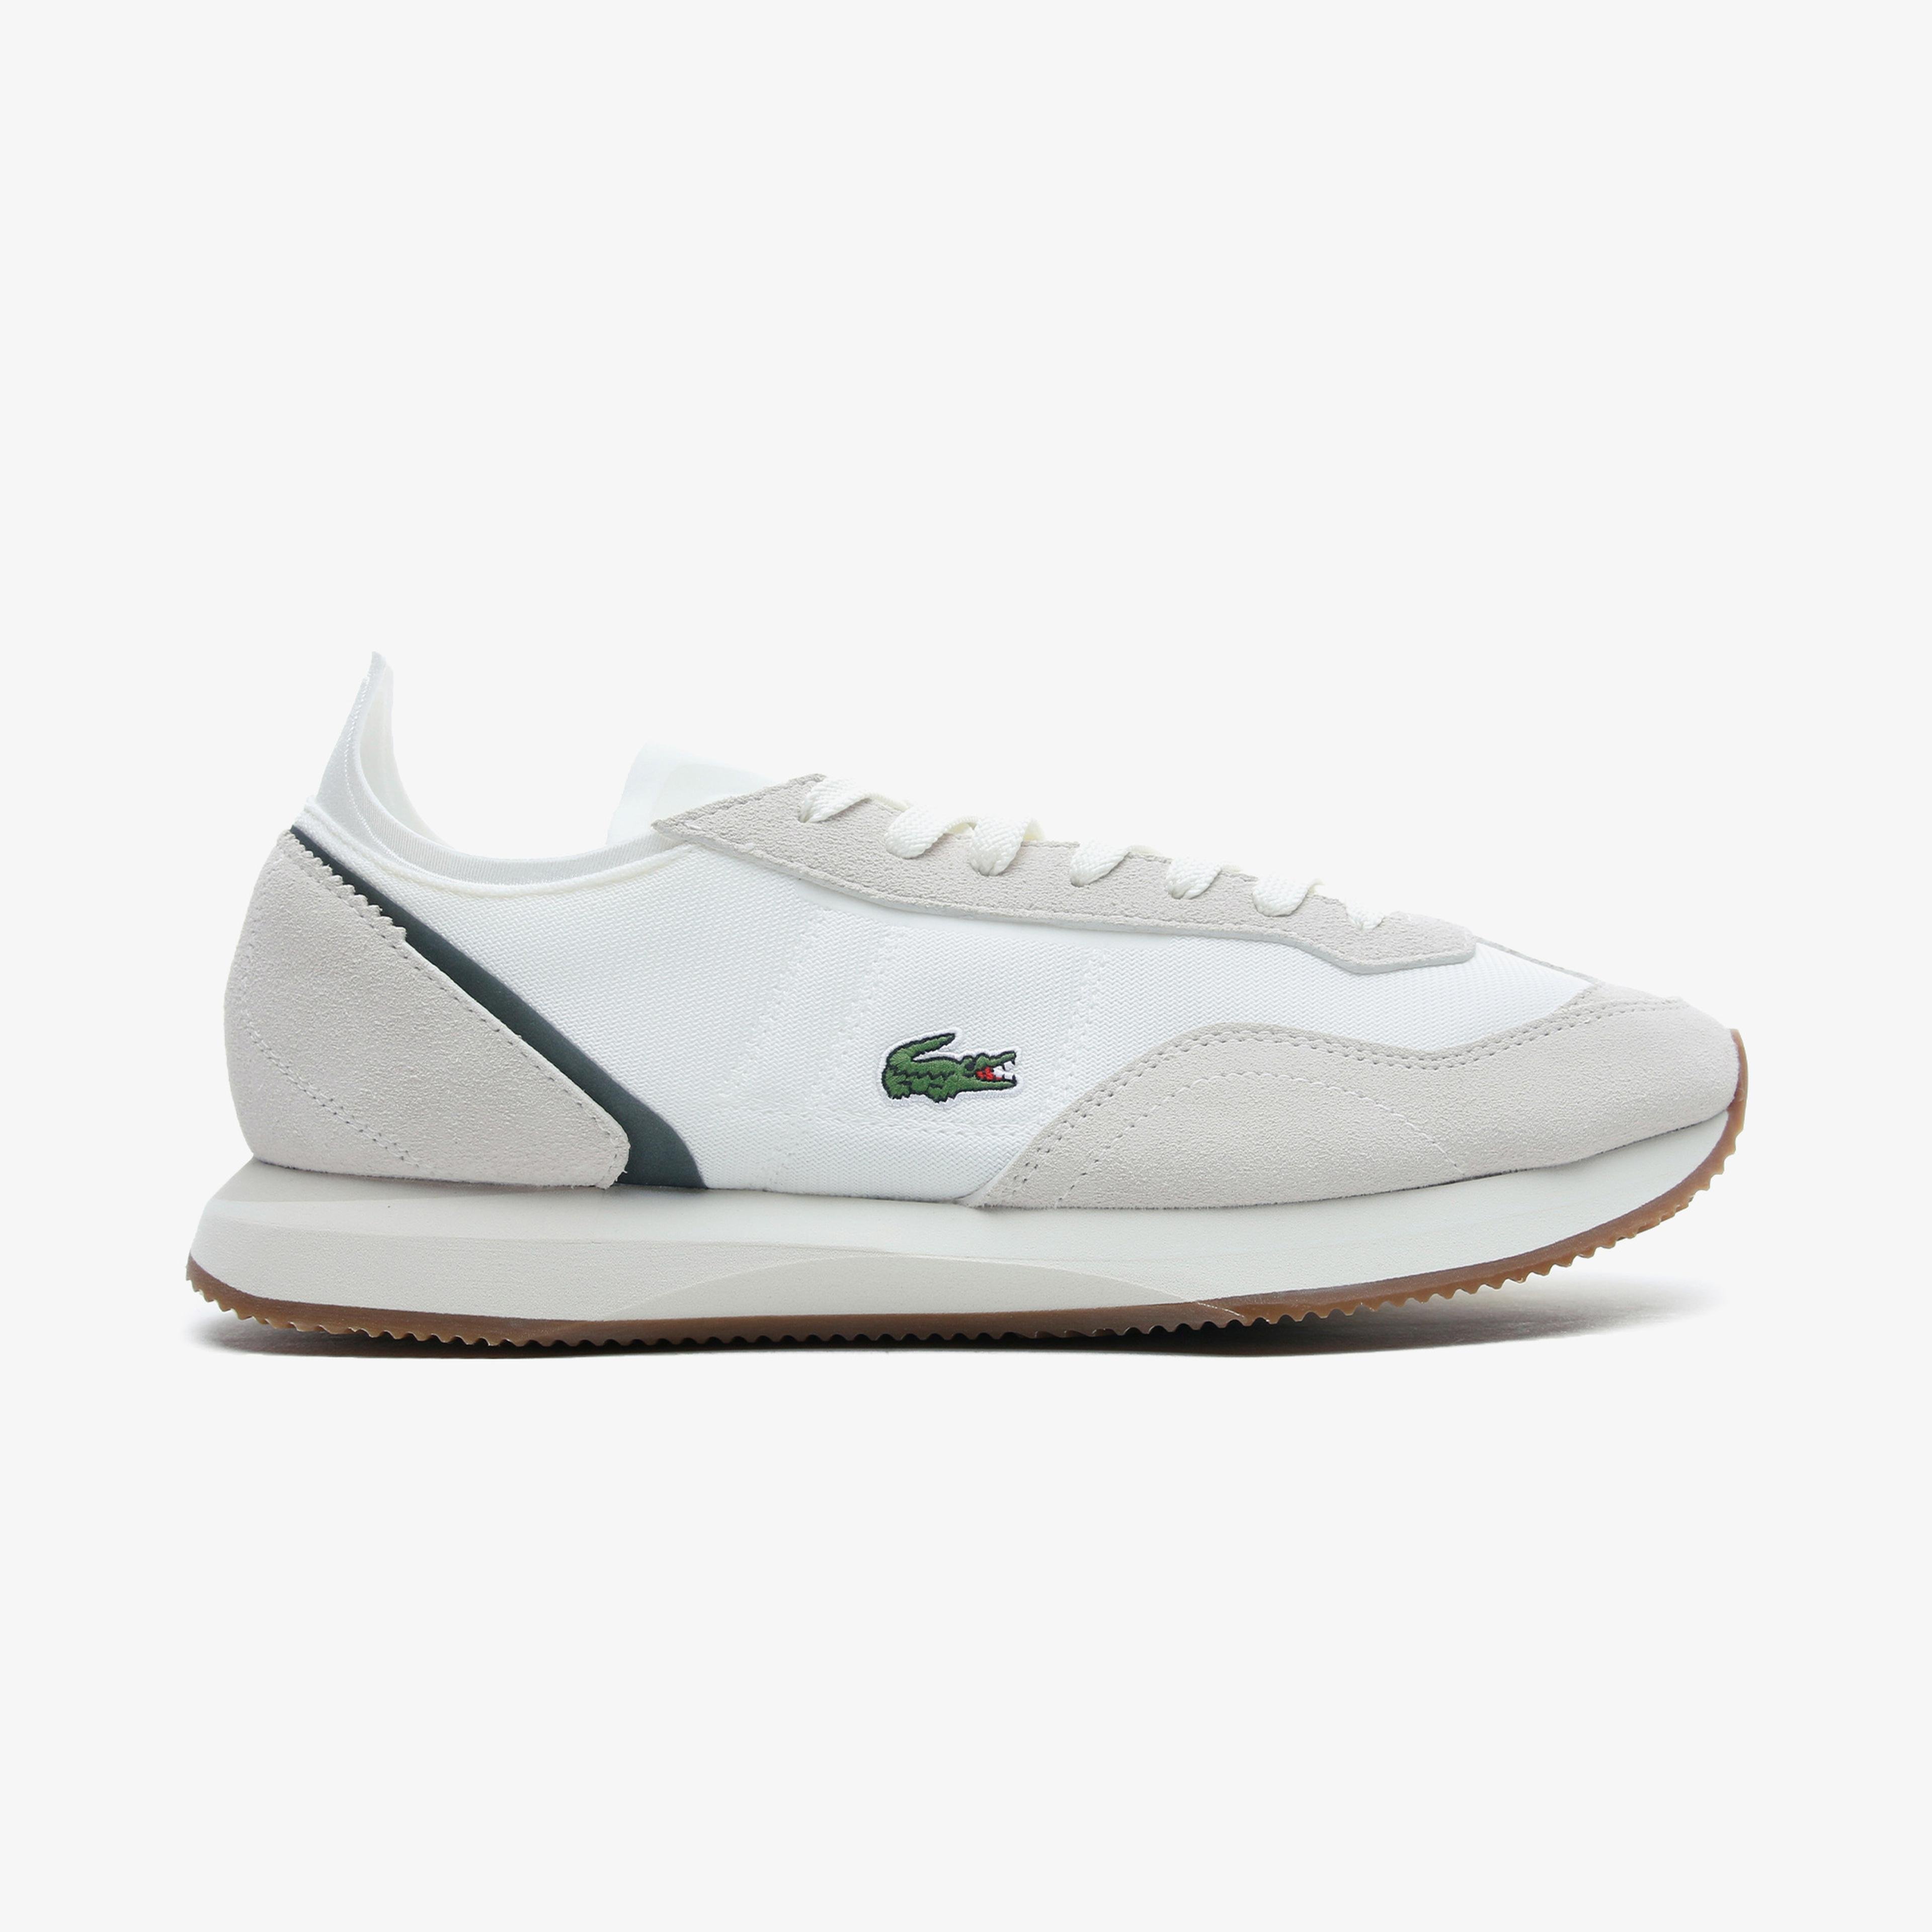 Lacoste Match Break 0721 1 Sma Erkek Beyaz - Koyu Yeşil Spor Ayakkabı